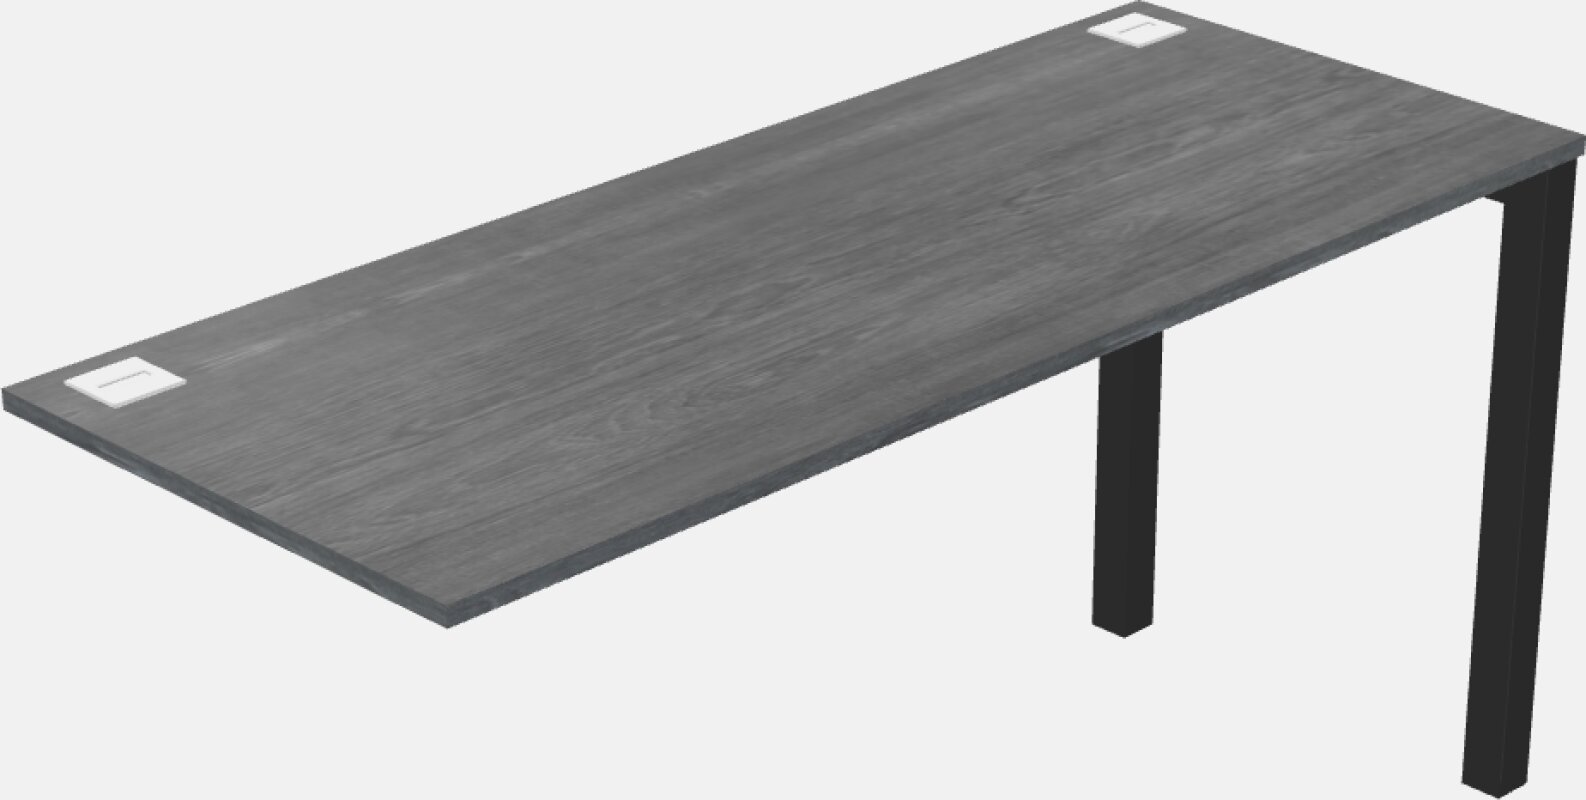 办公桌返回 - 金属底座 - 木质和面板系统